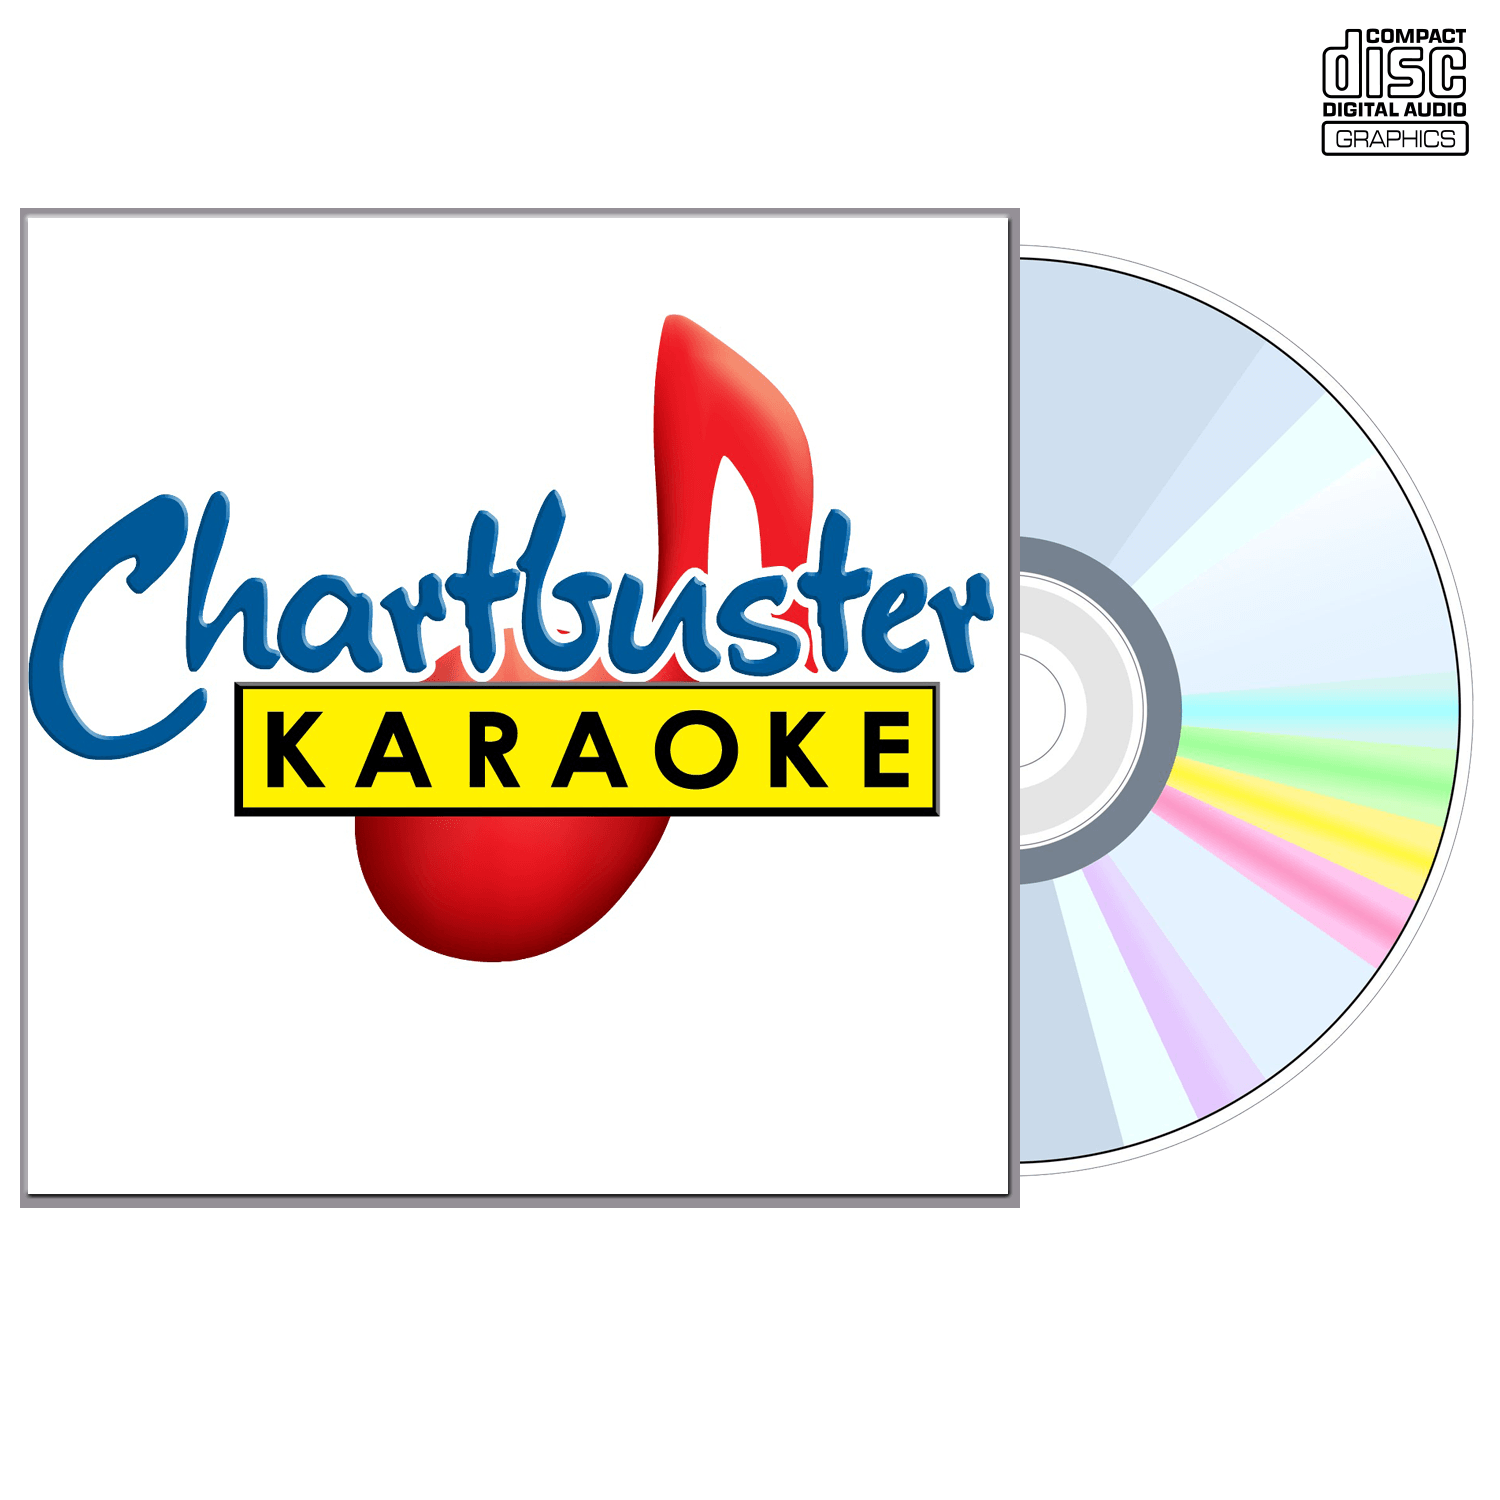 Rob Crosby - CD+G - Chartbuster Karaoke - Karaoke Home Entertainment